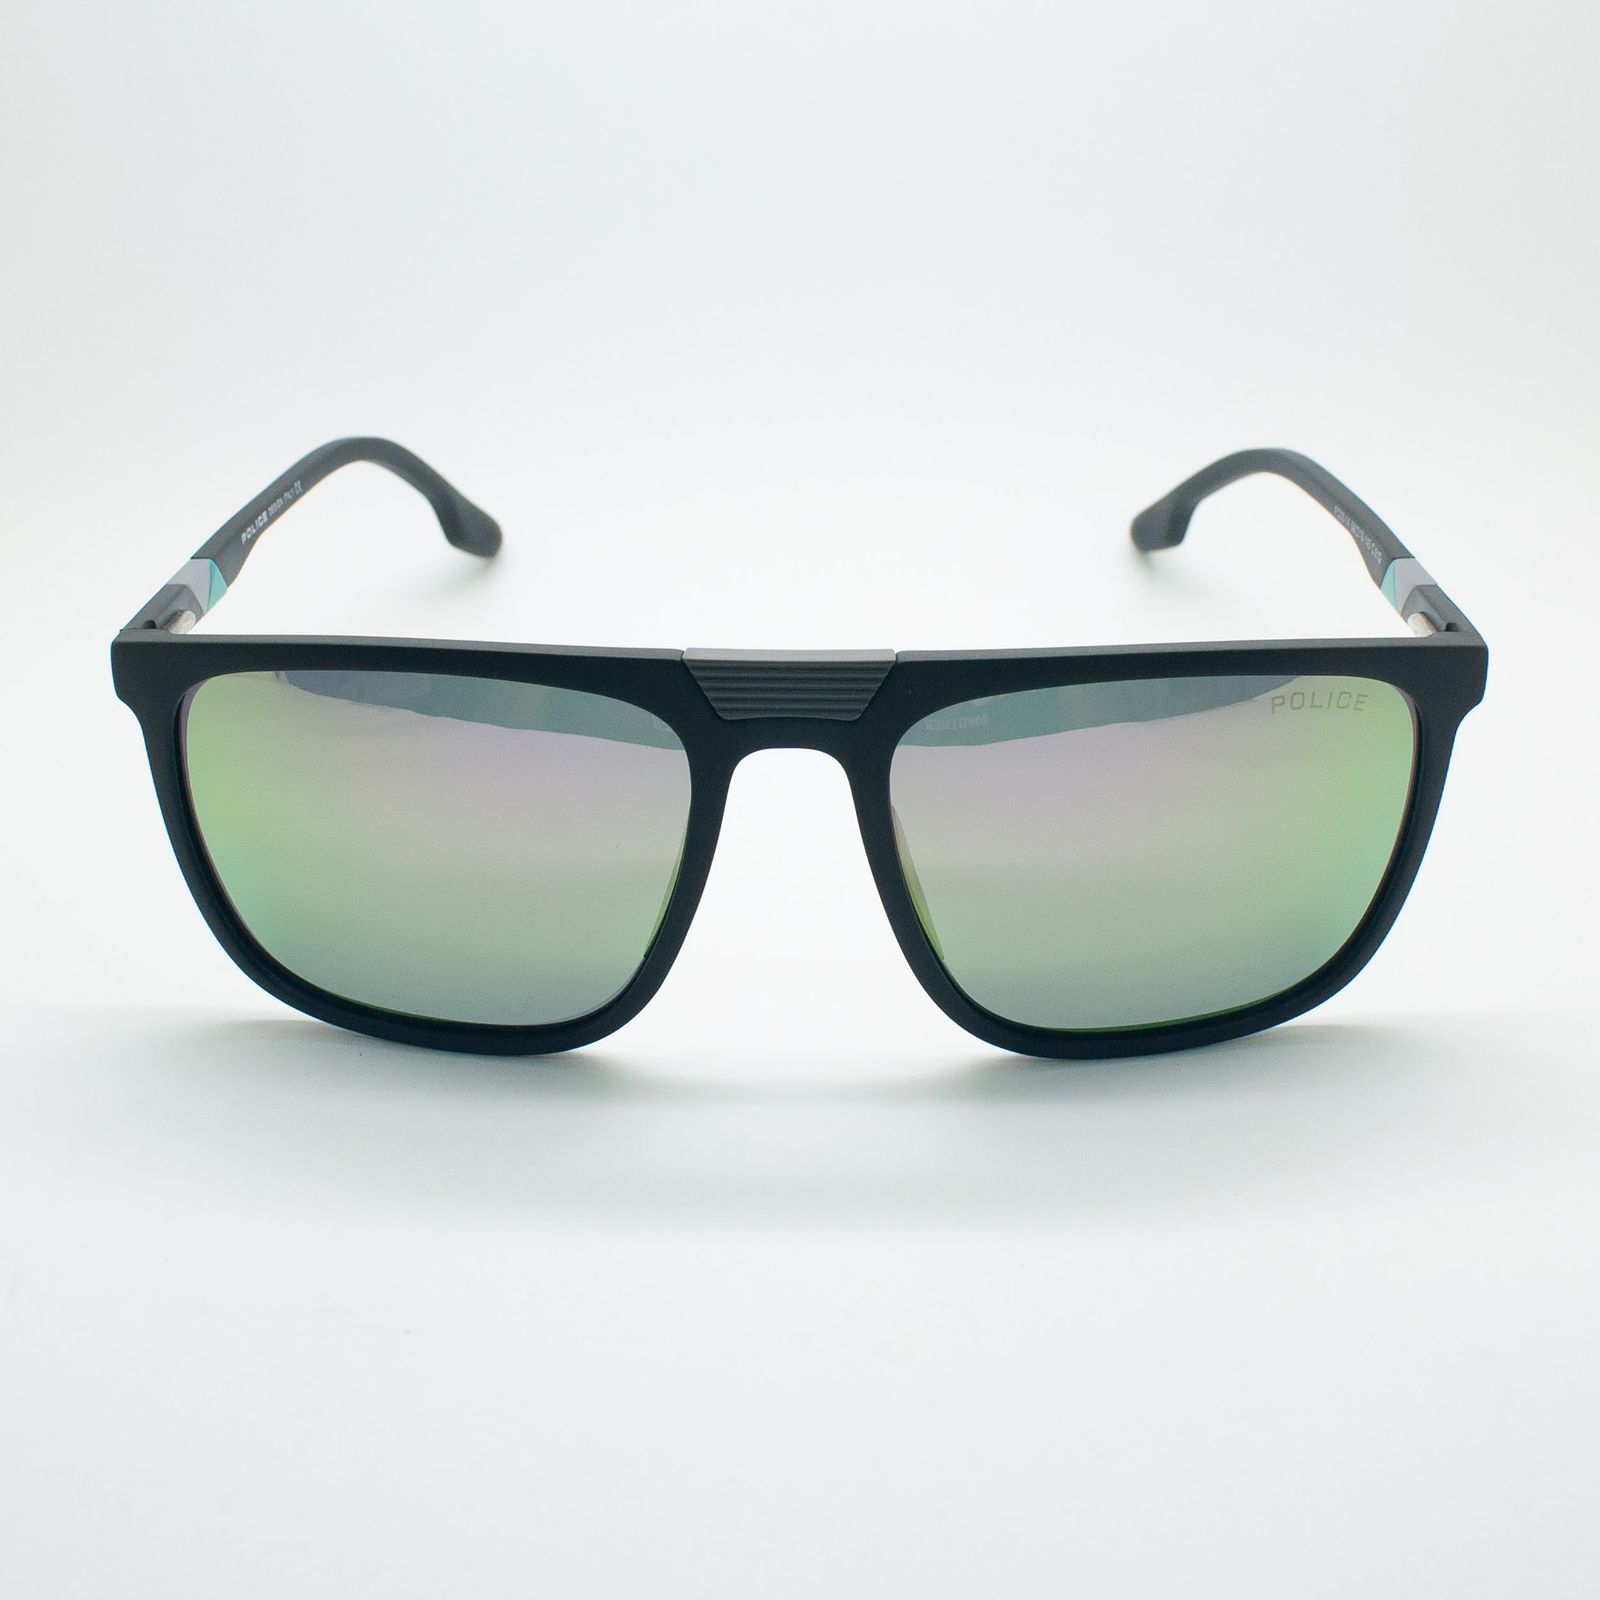 عینک آفتابی پلیس مدل FC03-14 C01G -  - 3